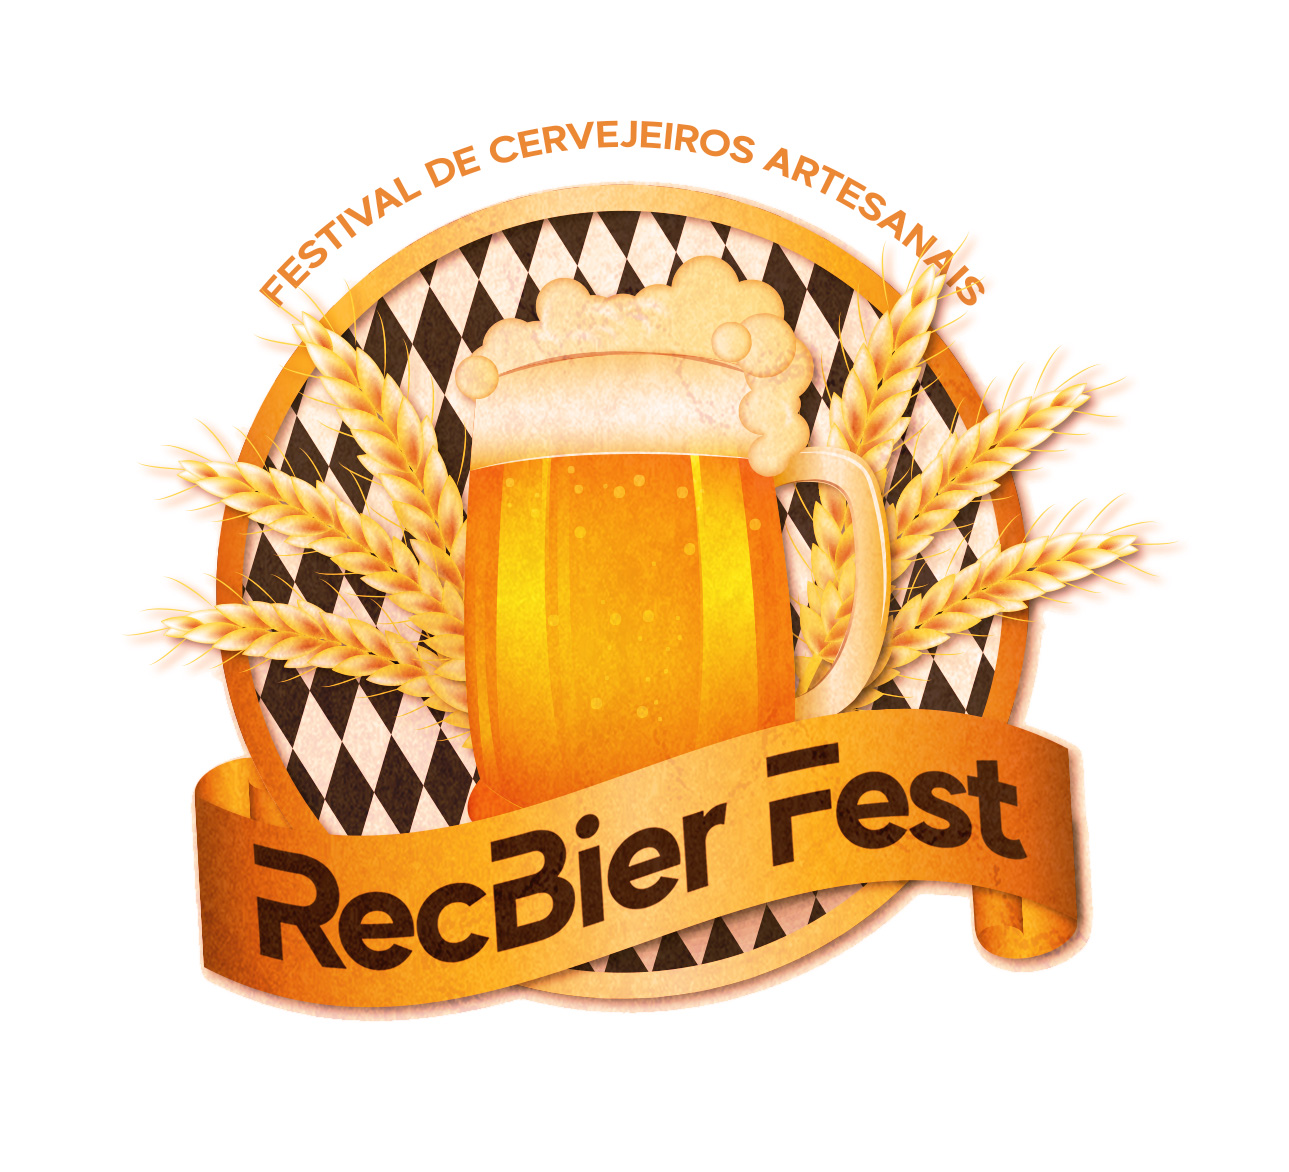 RecBier Fest reúne cervejeiros do Recife.